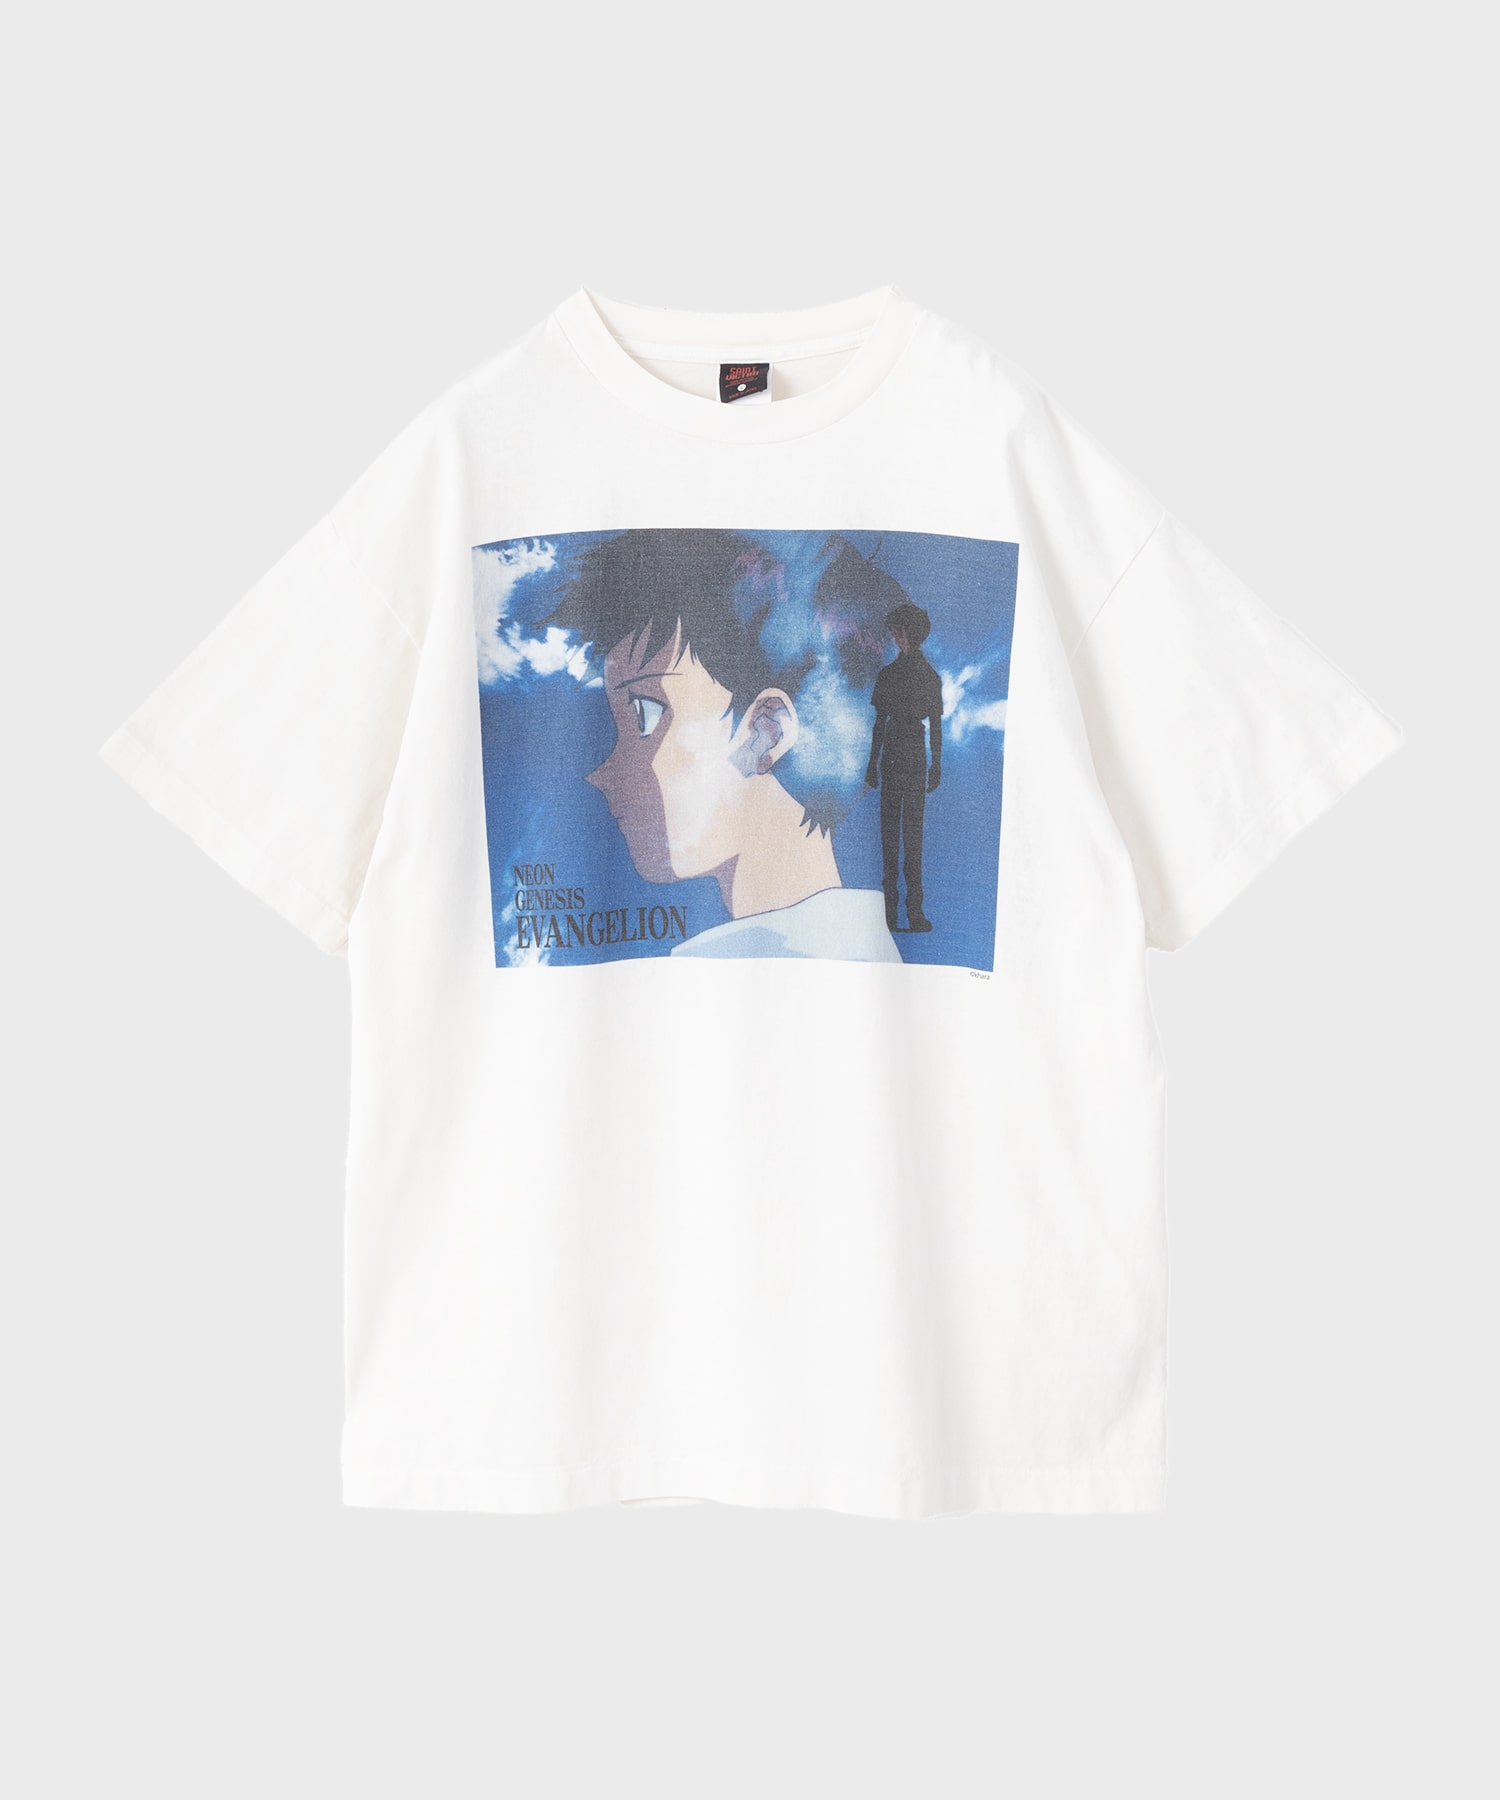 エヴァンゲリオン × セントマイケル SHINJI ショートスリーブTシャツ